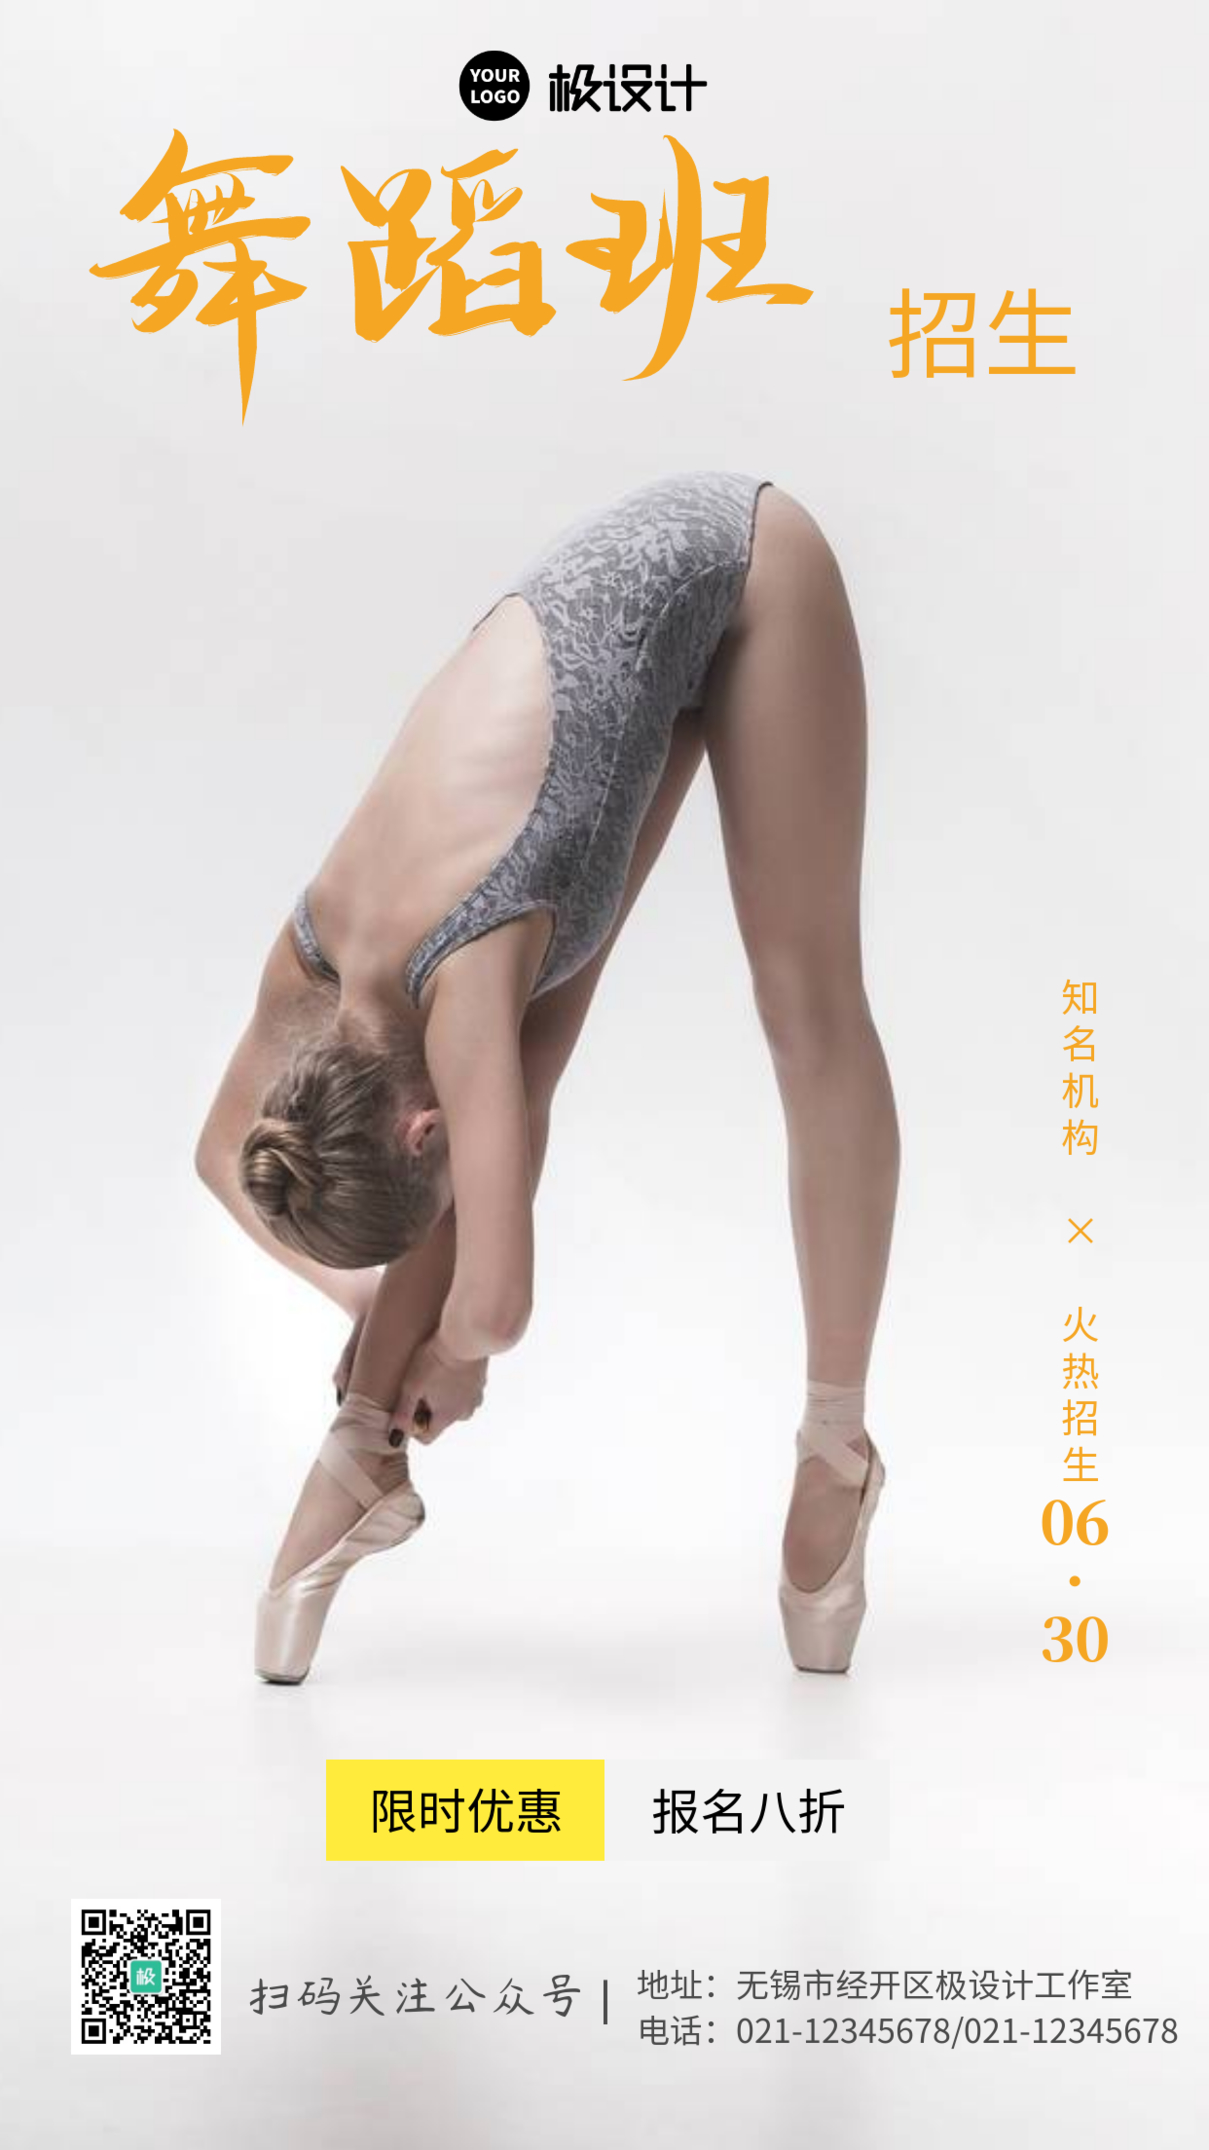 简约芭蕾舞暑假集训招生摄影图手机海报